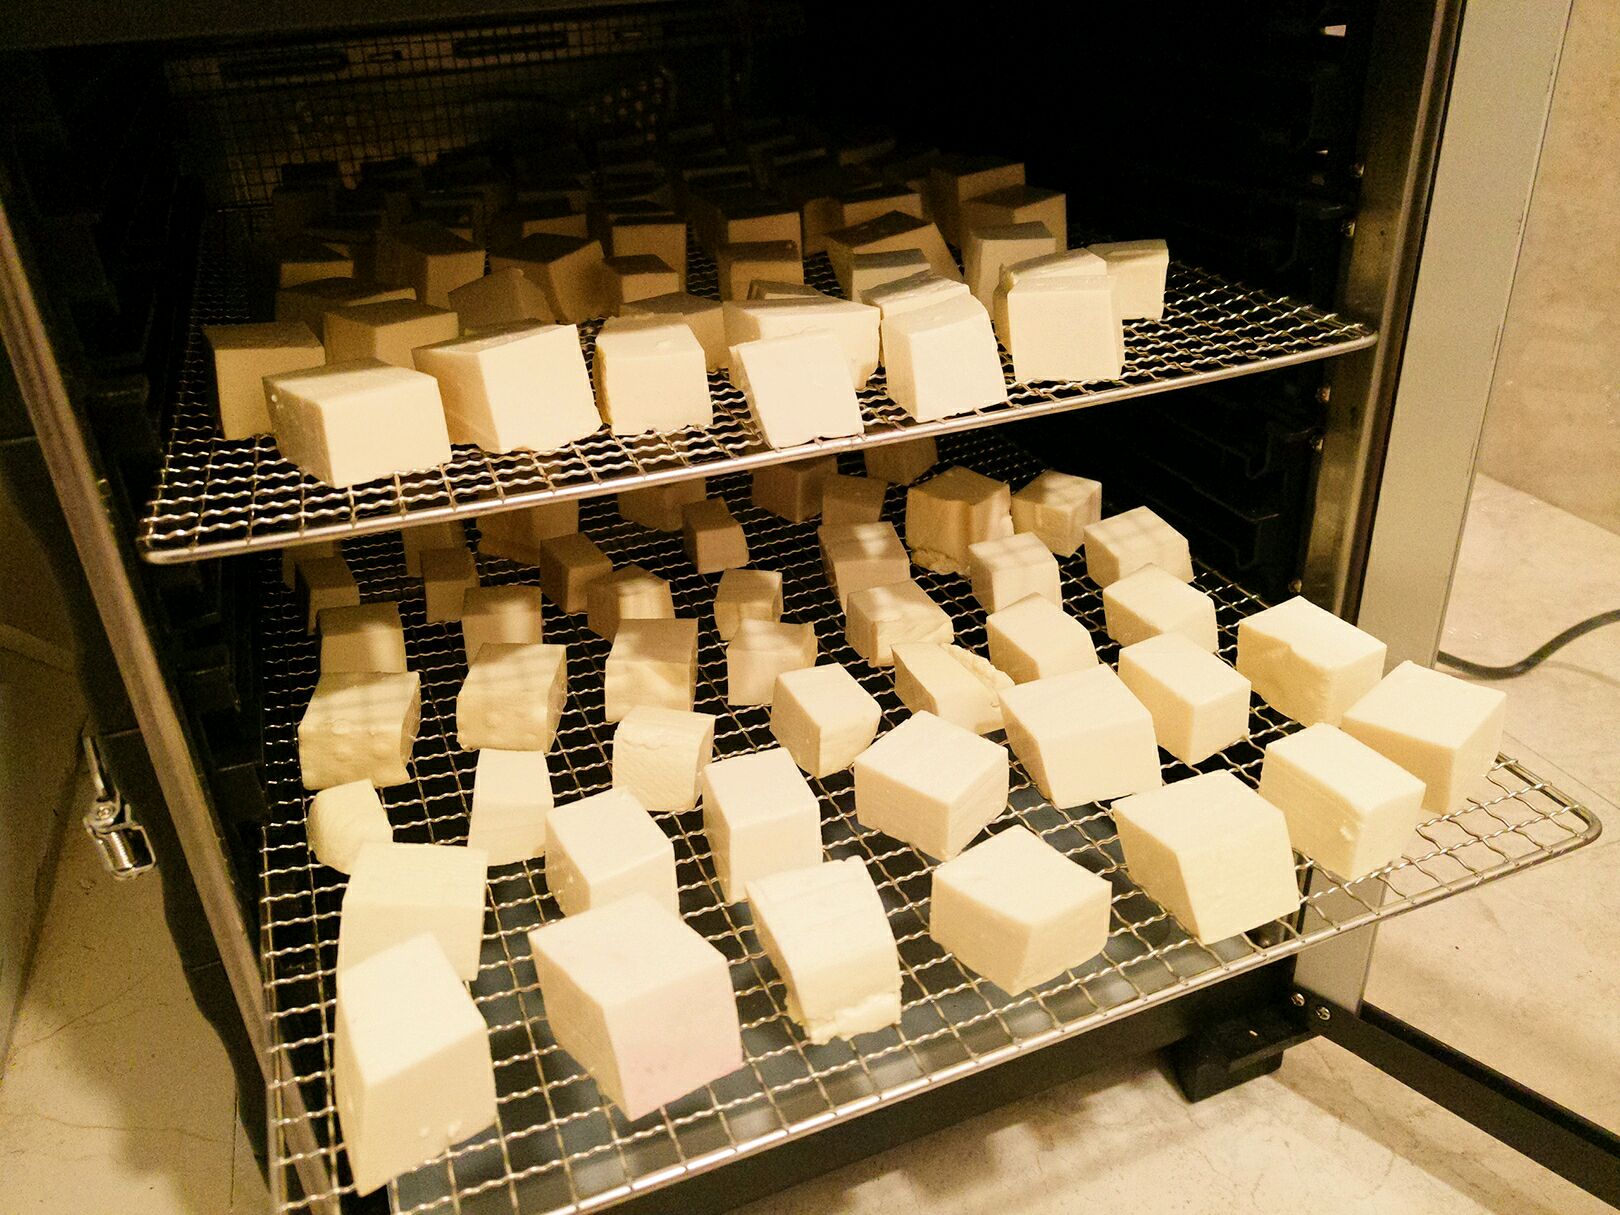 豆腐乳的家常制作方法